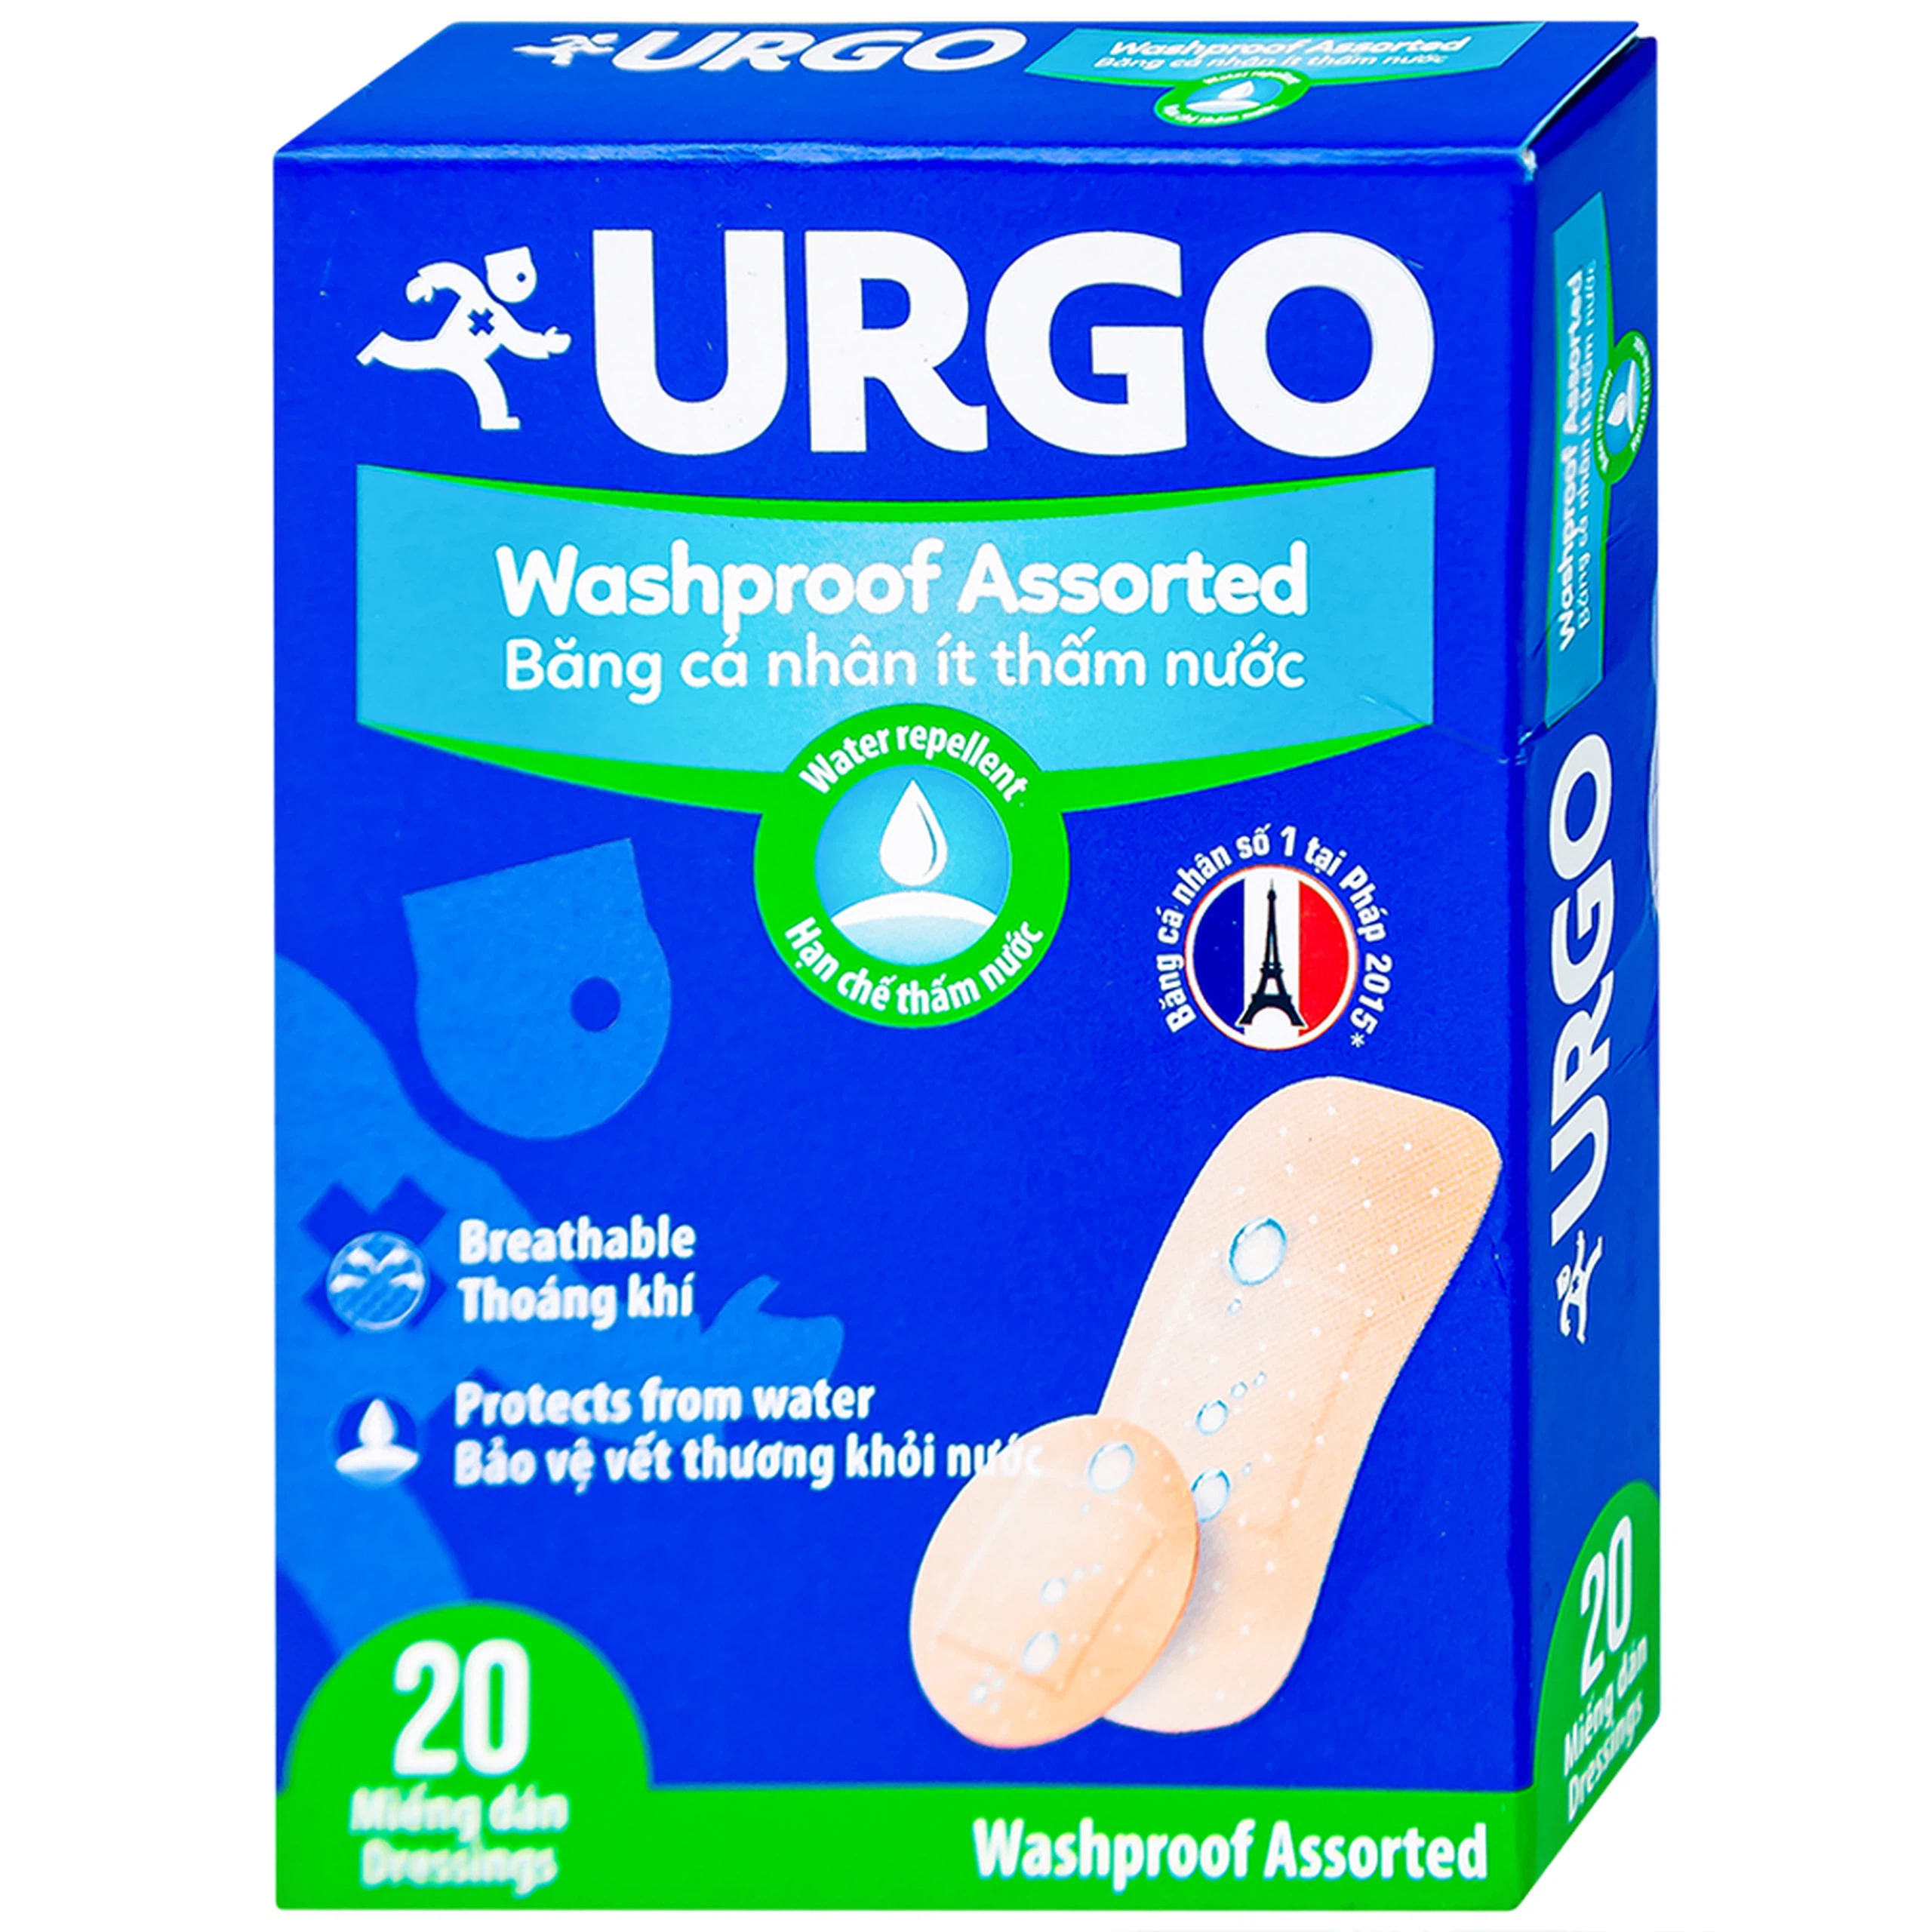 Băng cá nhân ít thấm nước Urgo Washproof Assorted bảo vệ vết thương khỏi nước (20 miếng)